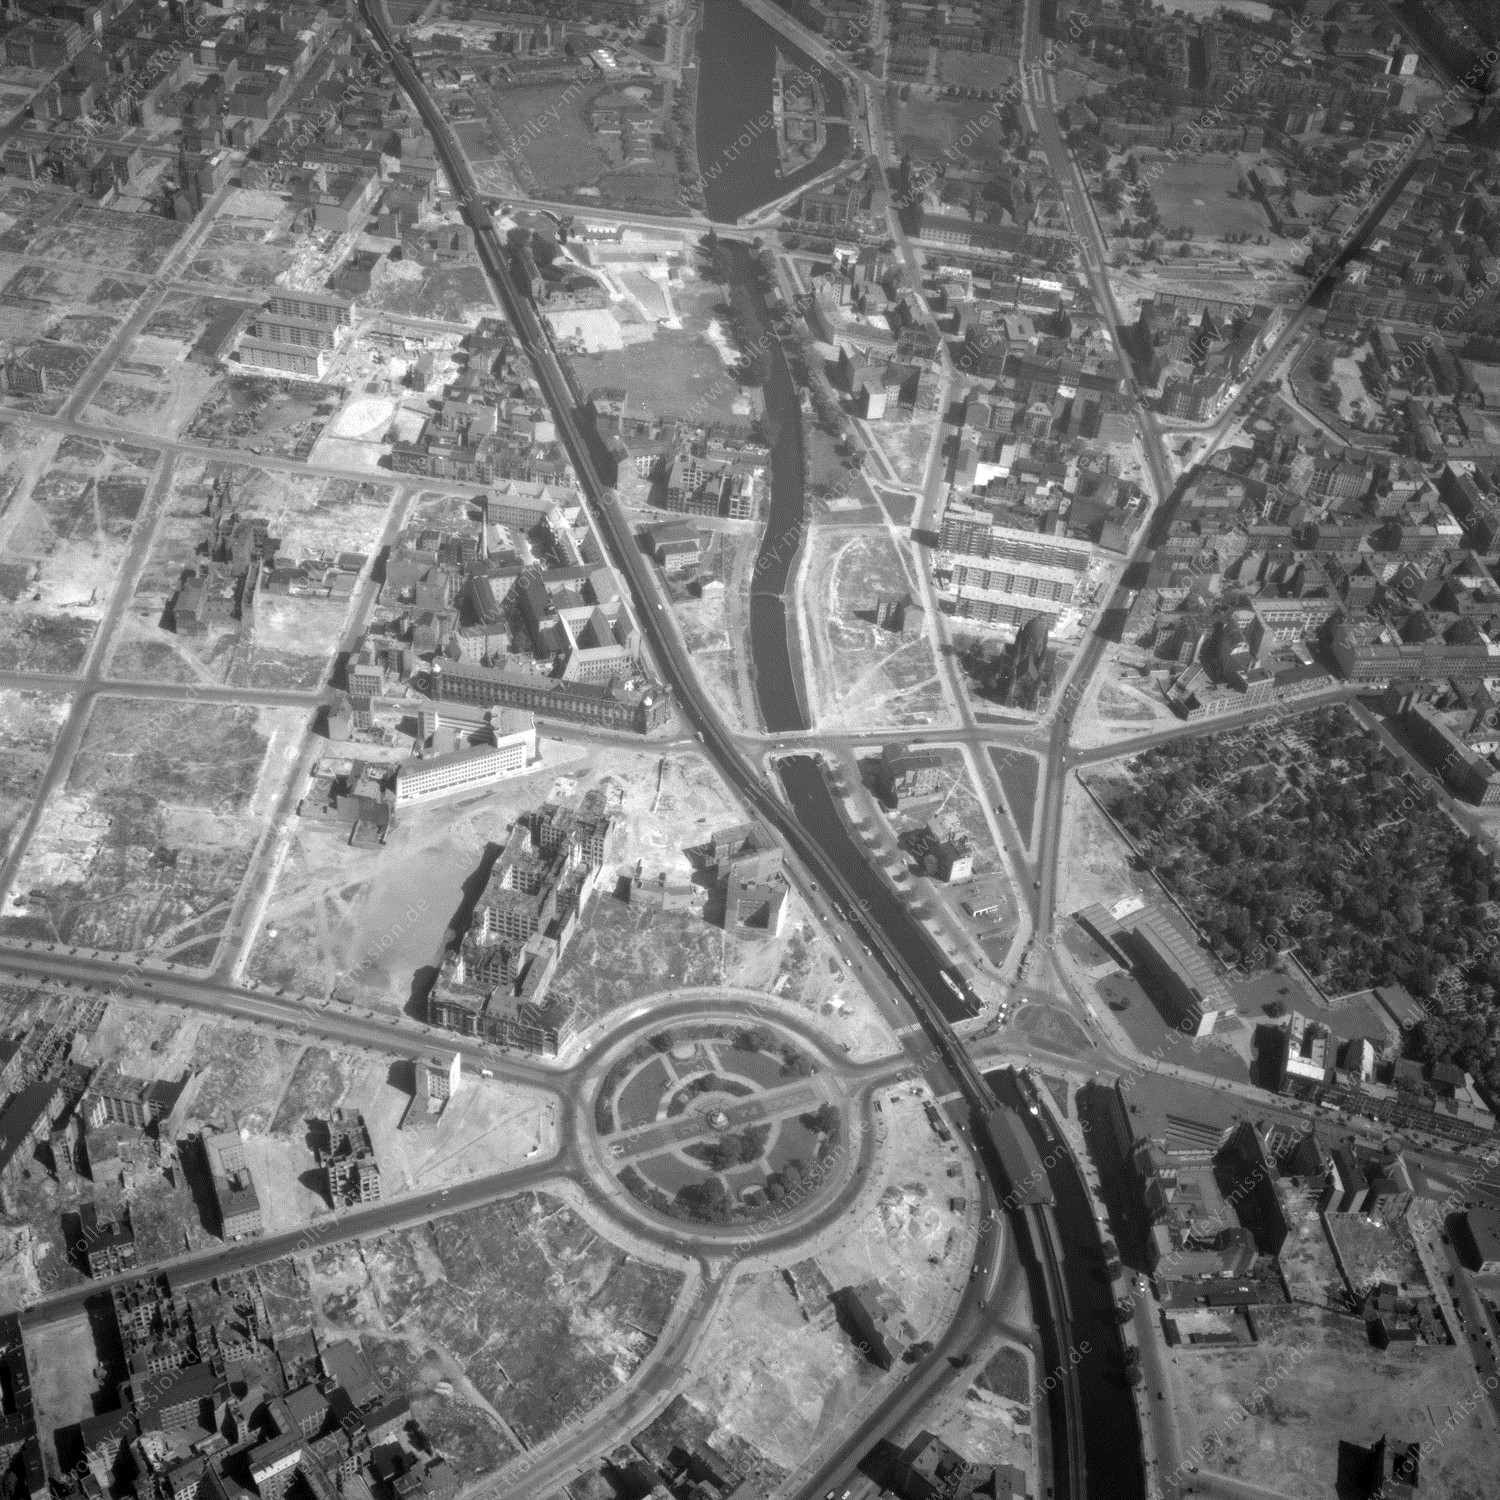 Alte Fotos und Luftbilder von Berlin - Luftbildaufnahme Nr. 07 - Historische Luftaufnahmen von West-Berlin aus dem Jahr 1954 - Flugstrecke Juliett